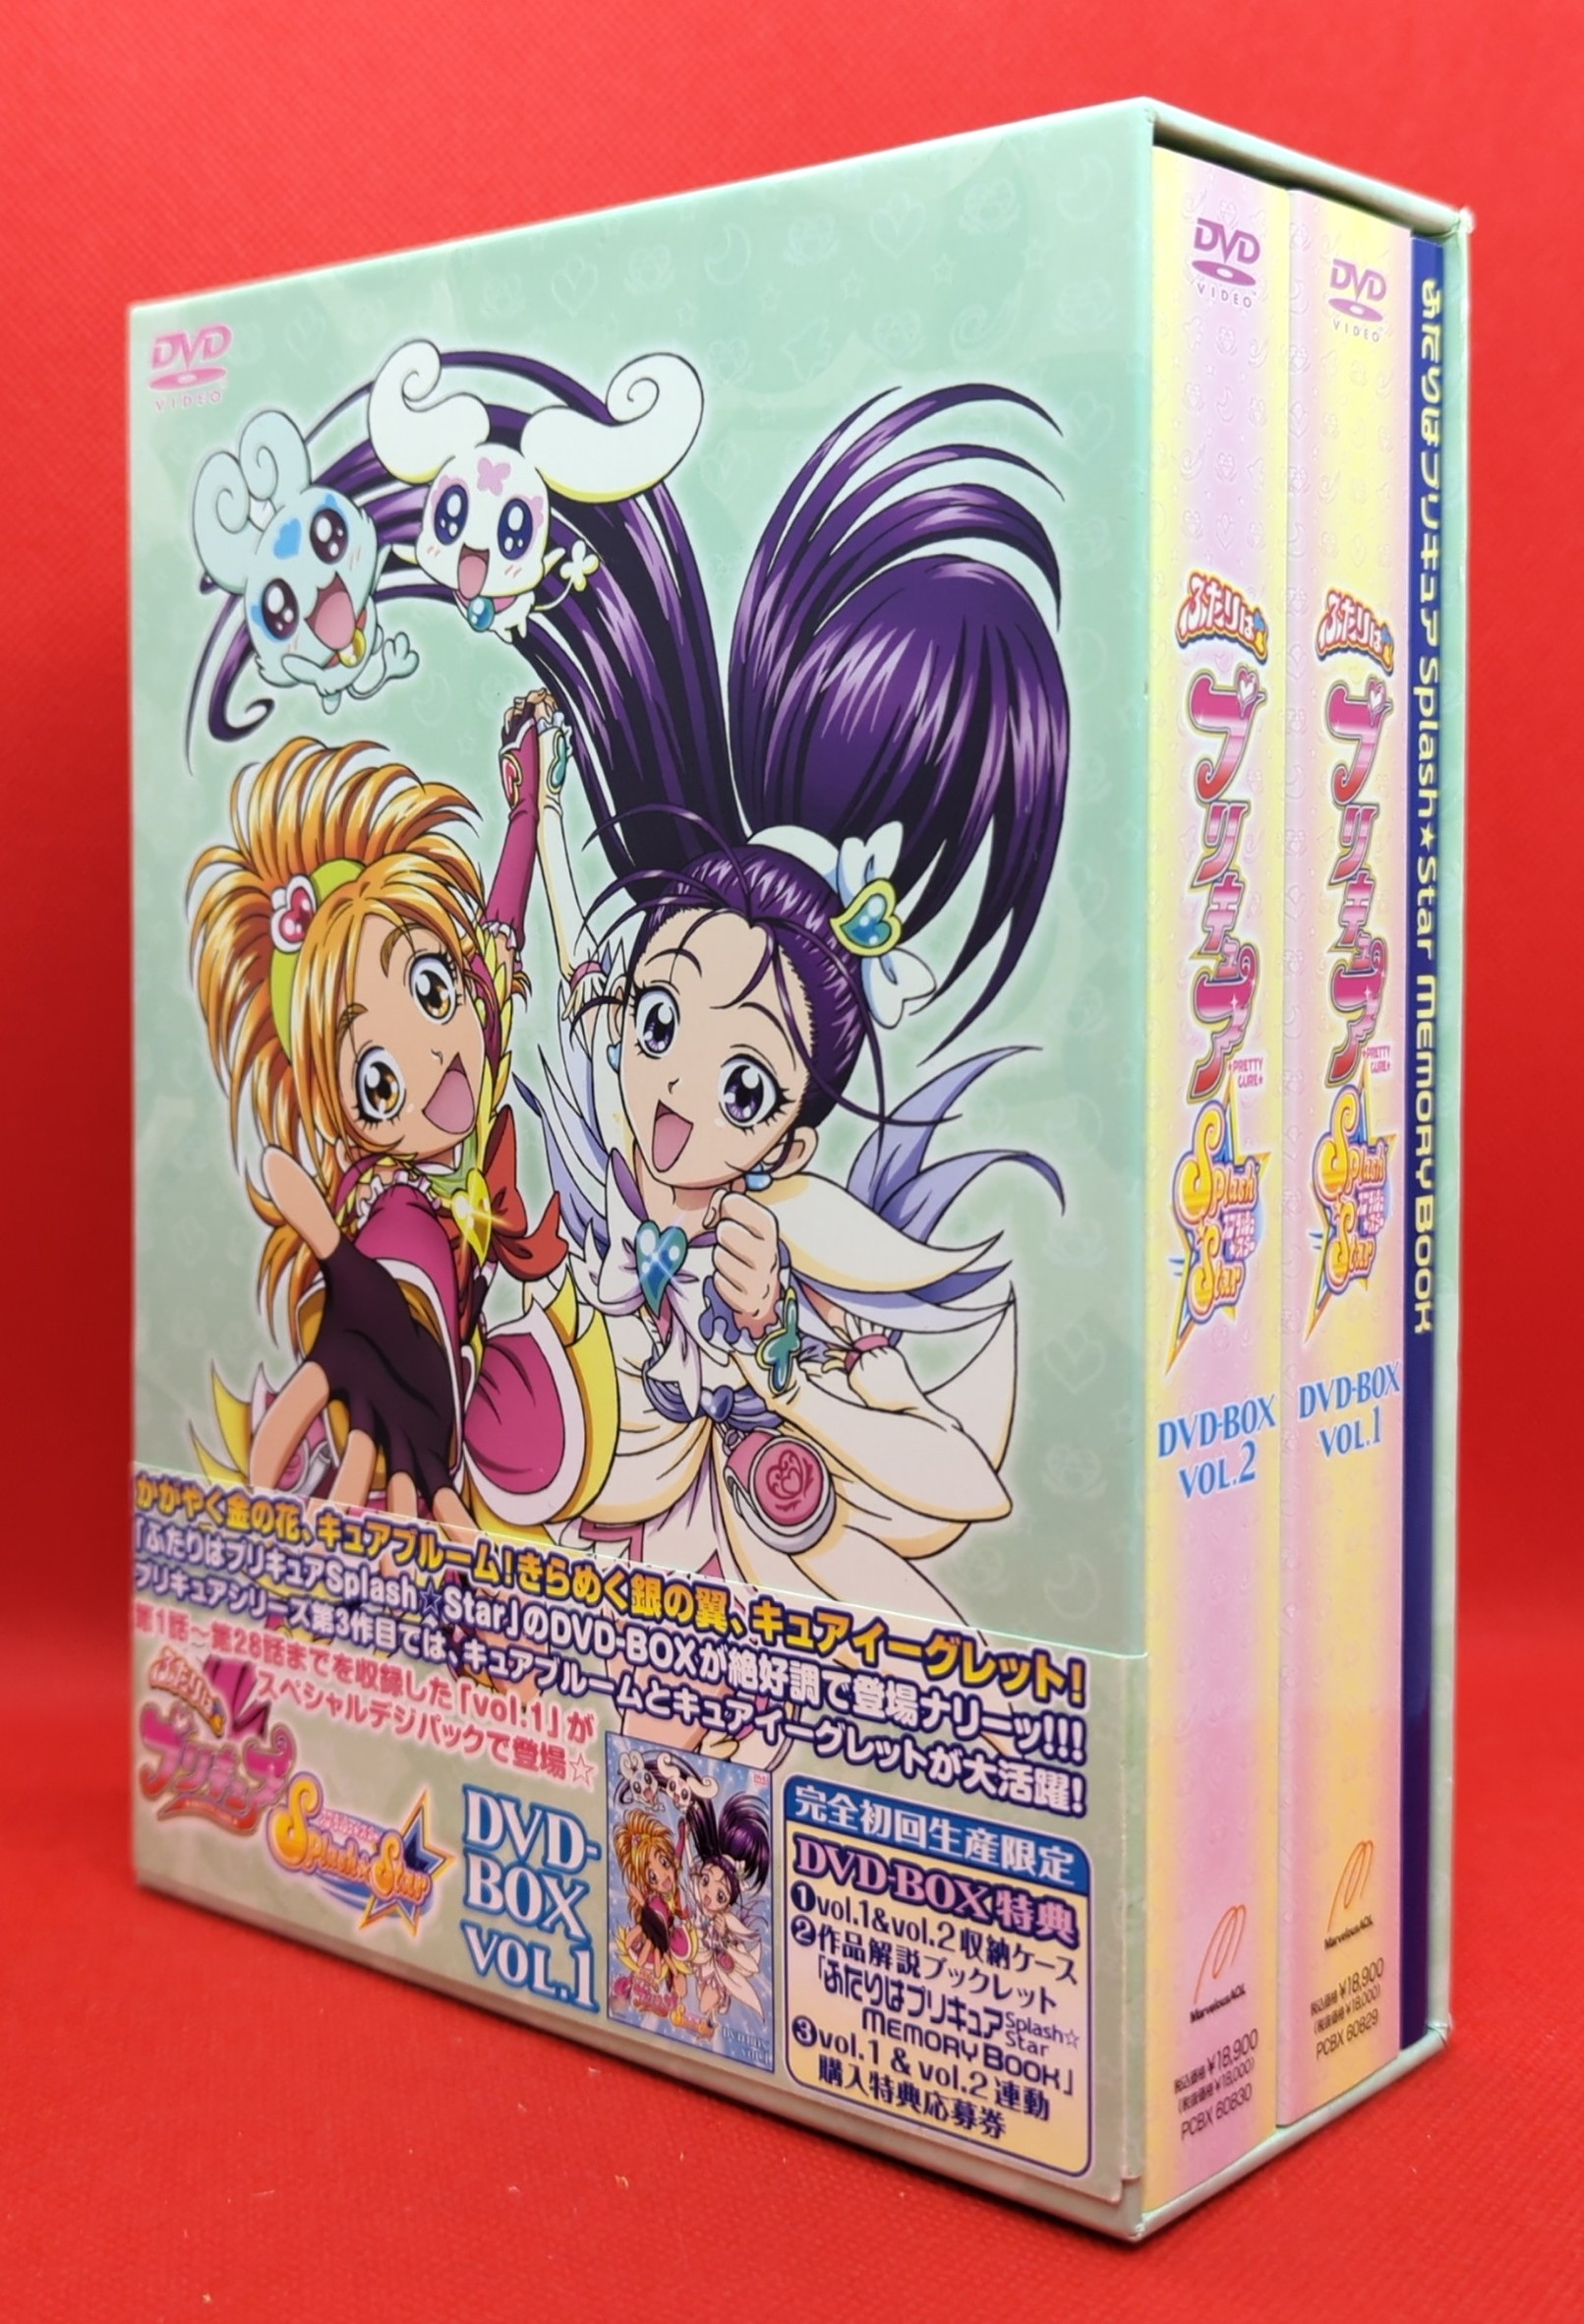 ふたりはプリキュアSplash☆Star DVD-BOX 完全初回限定盤セット - アニメ